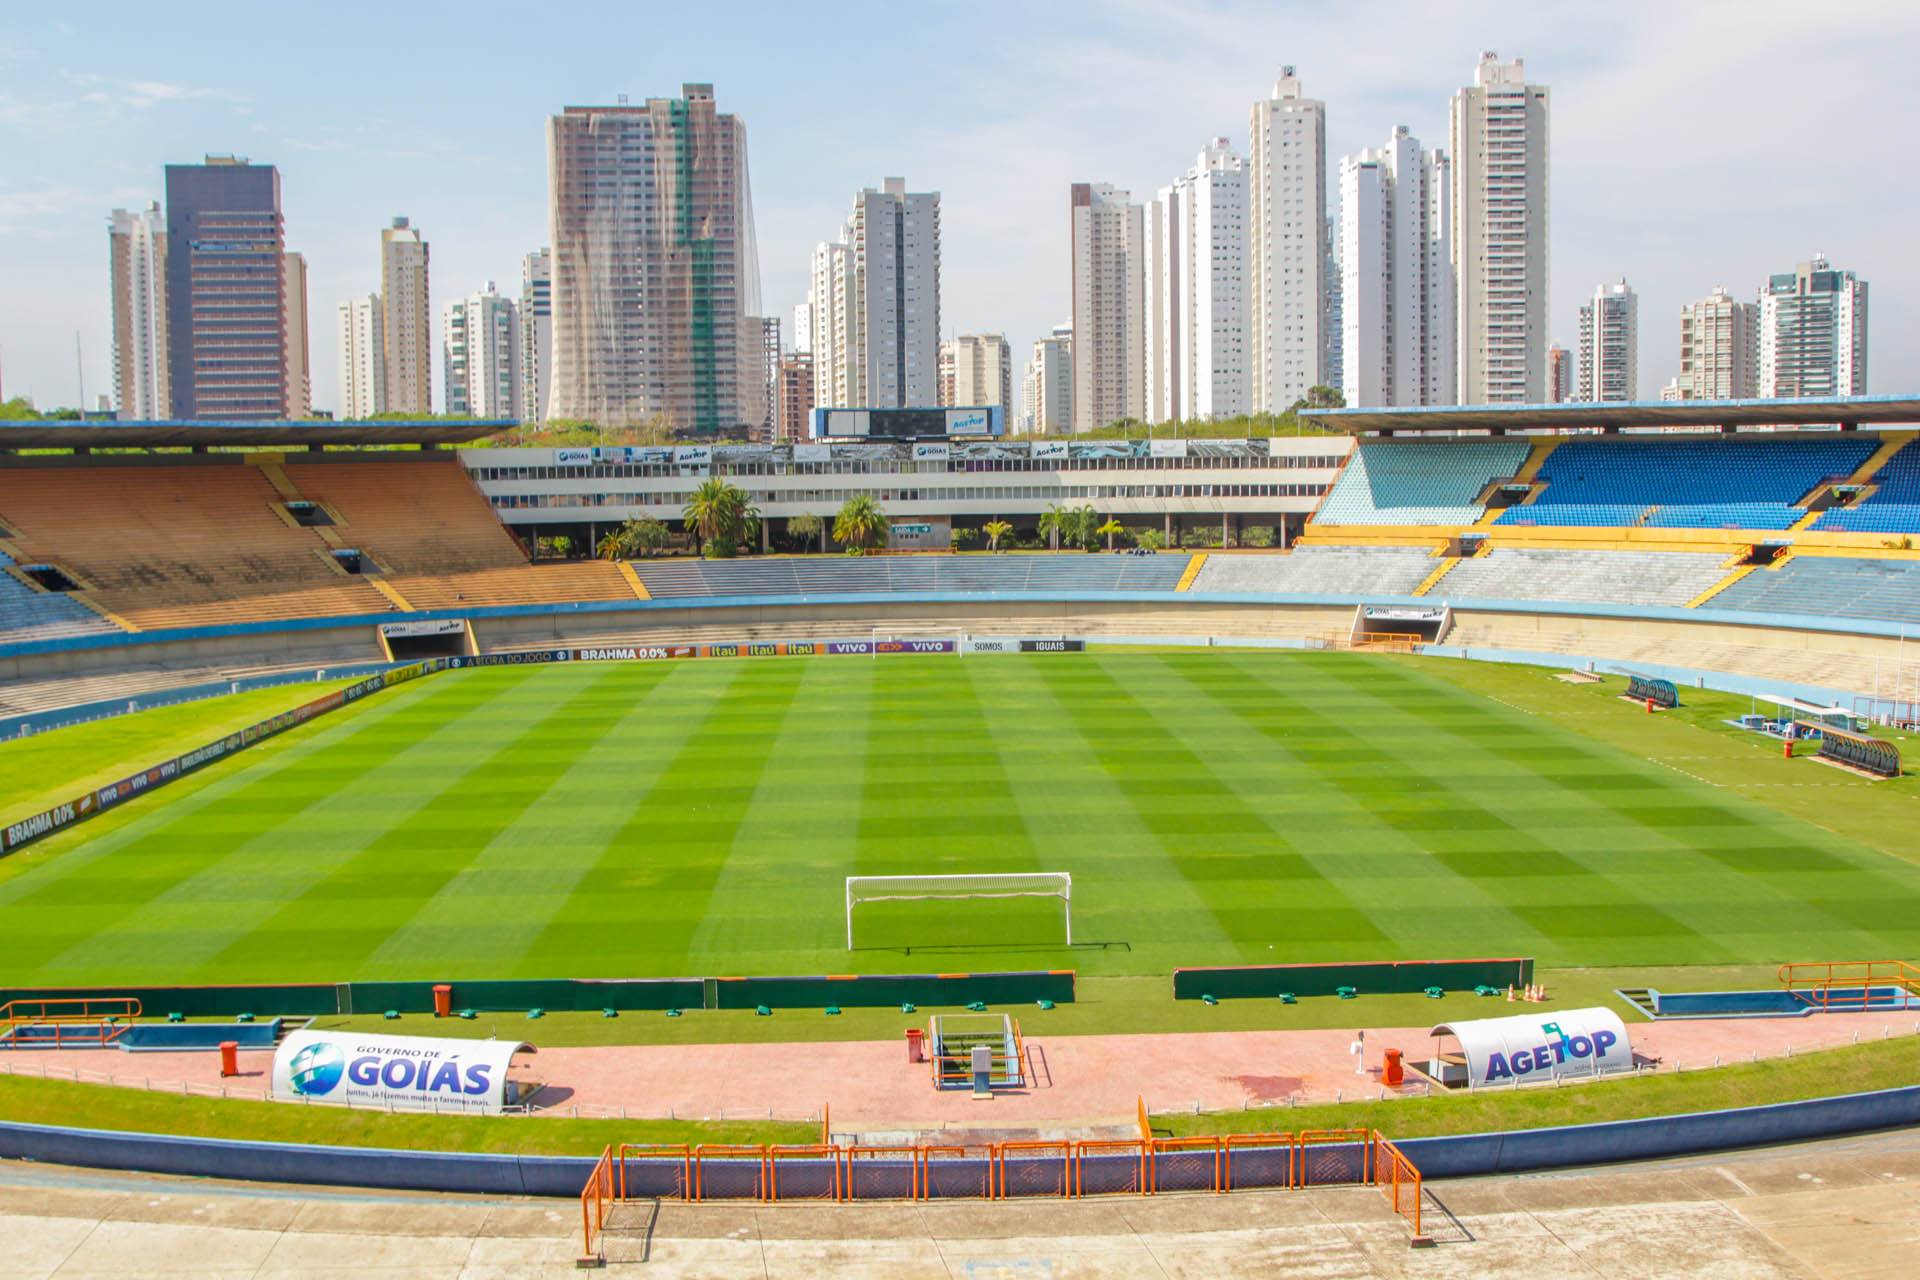 O estádio Serra Dourada, localizado em Goiânia, é palco de jogos do Goiás, Atlético-GO, Vila Nova e Goiânia. Foi inaugurado em março de 1975, ou seja, tem 45 anos de existência.